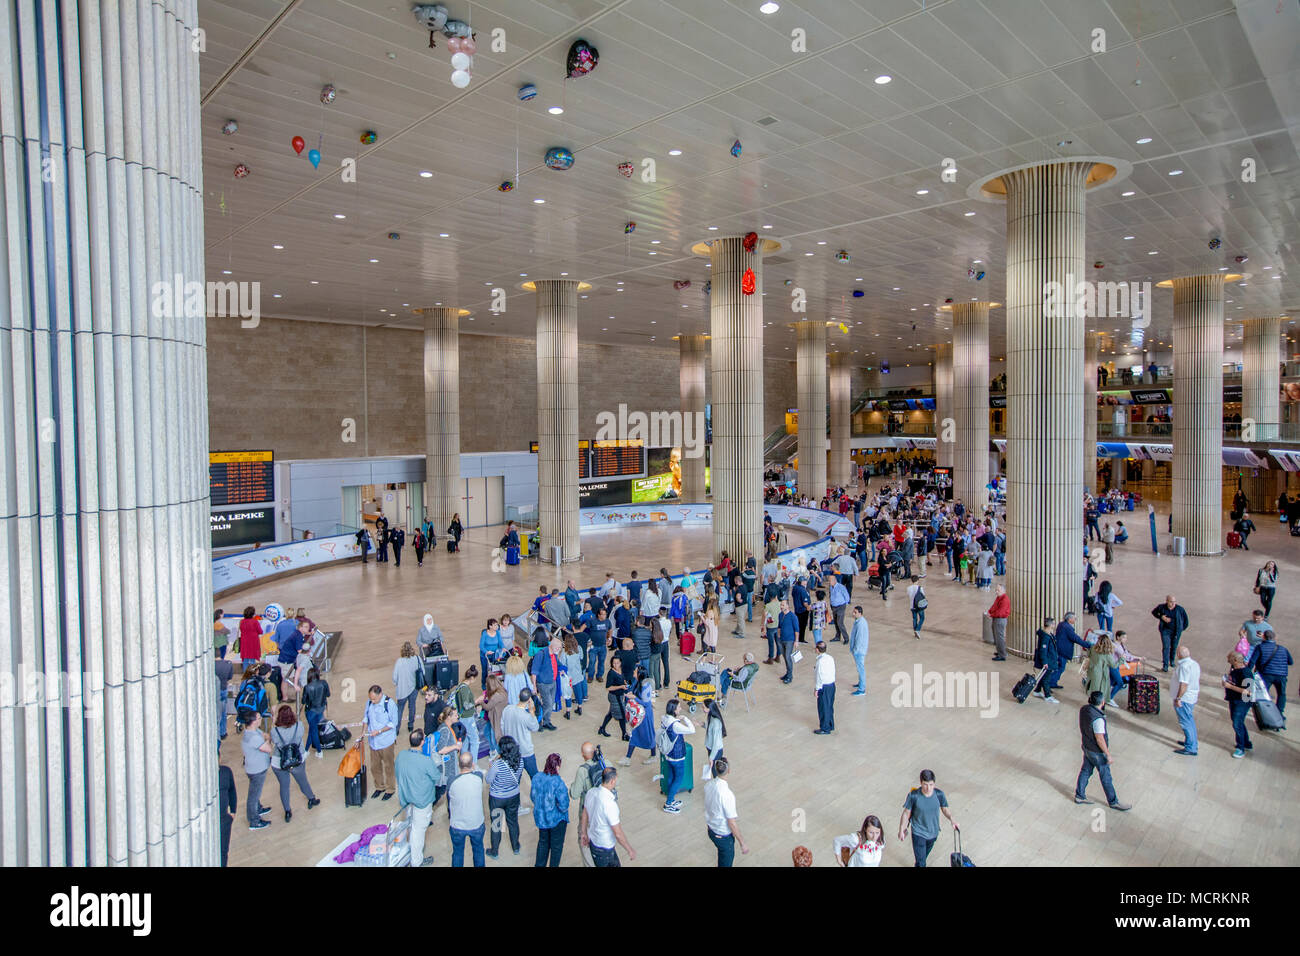 L'aéroport international Ben Gourion, Israël, l'aérogare 3, hall de l'arrivée Banque D'Images